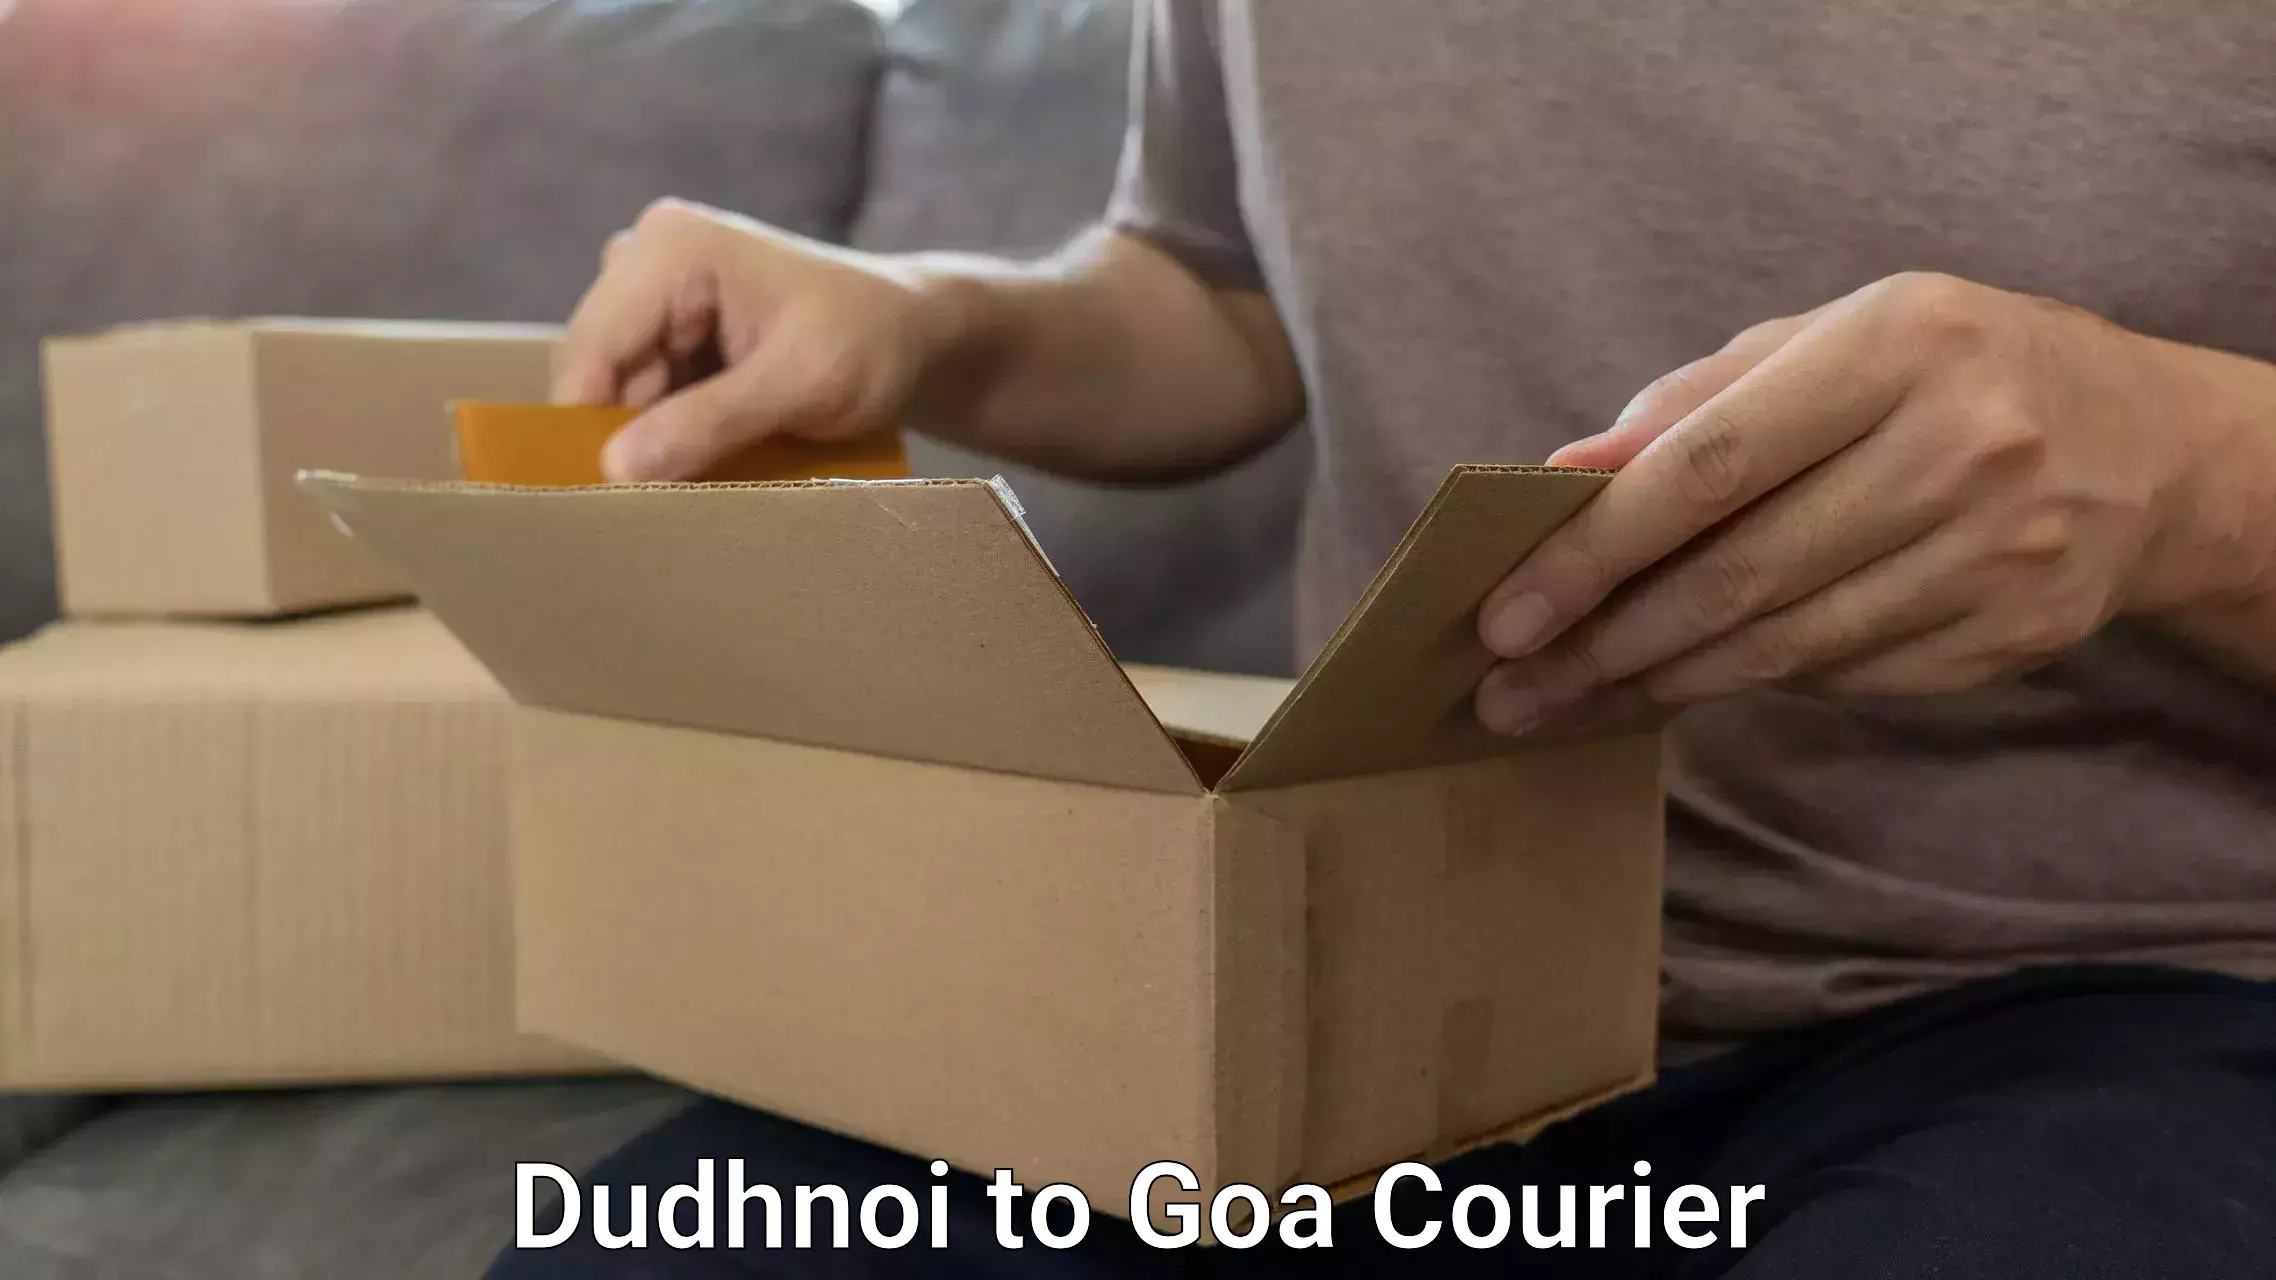 Door-to-door baggage service Dudhnoi to Goa